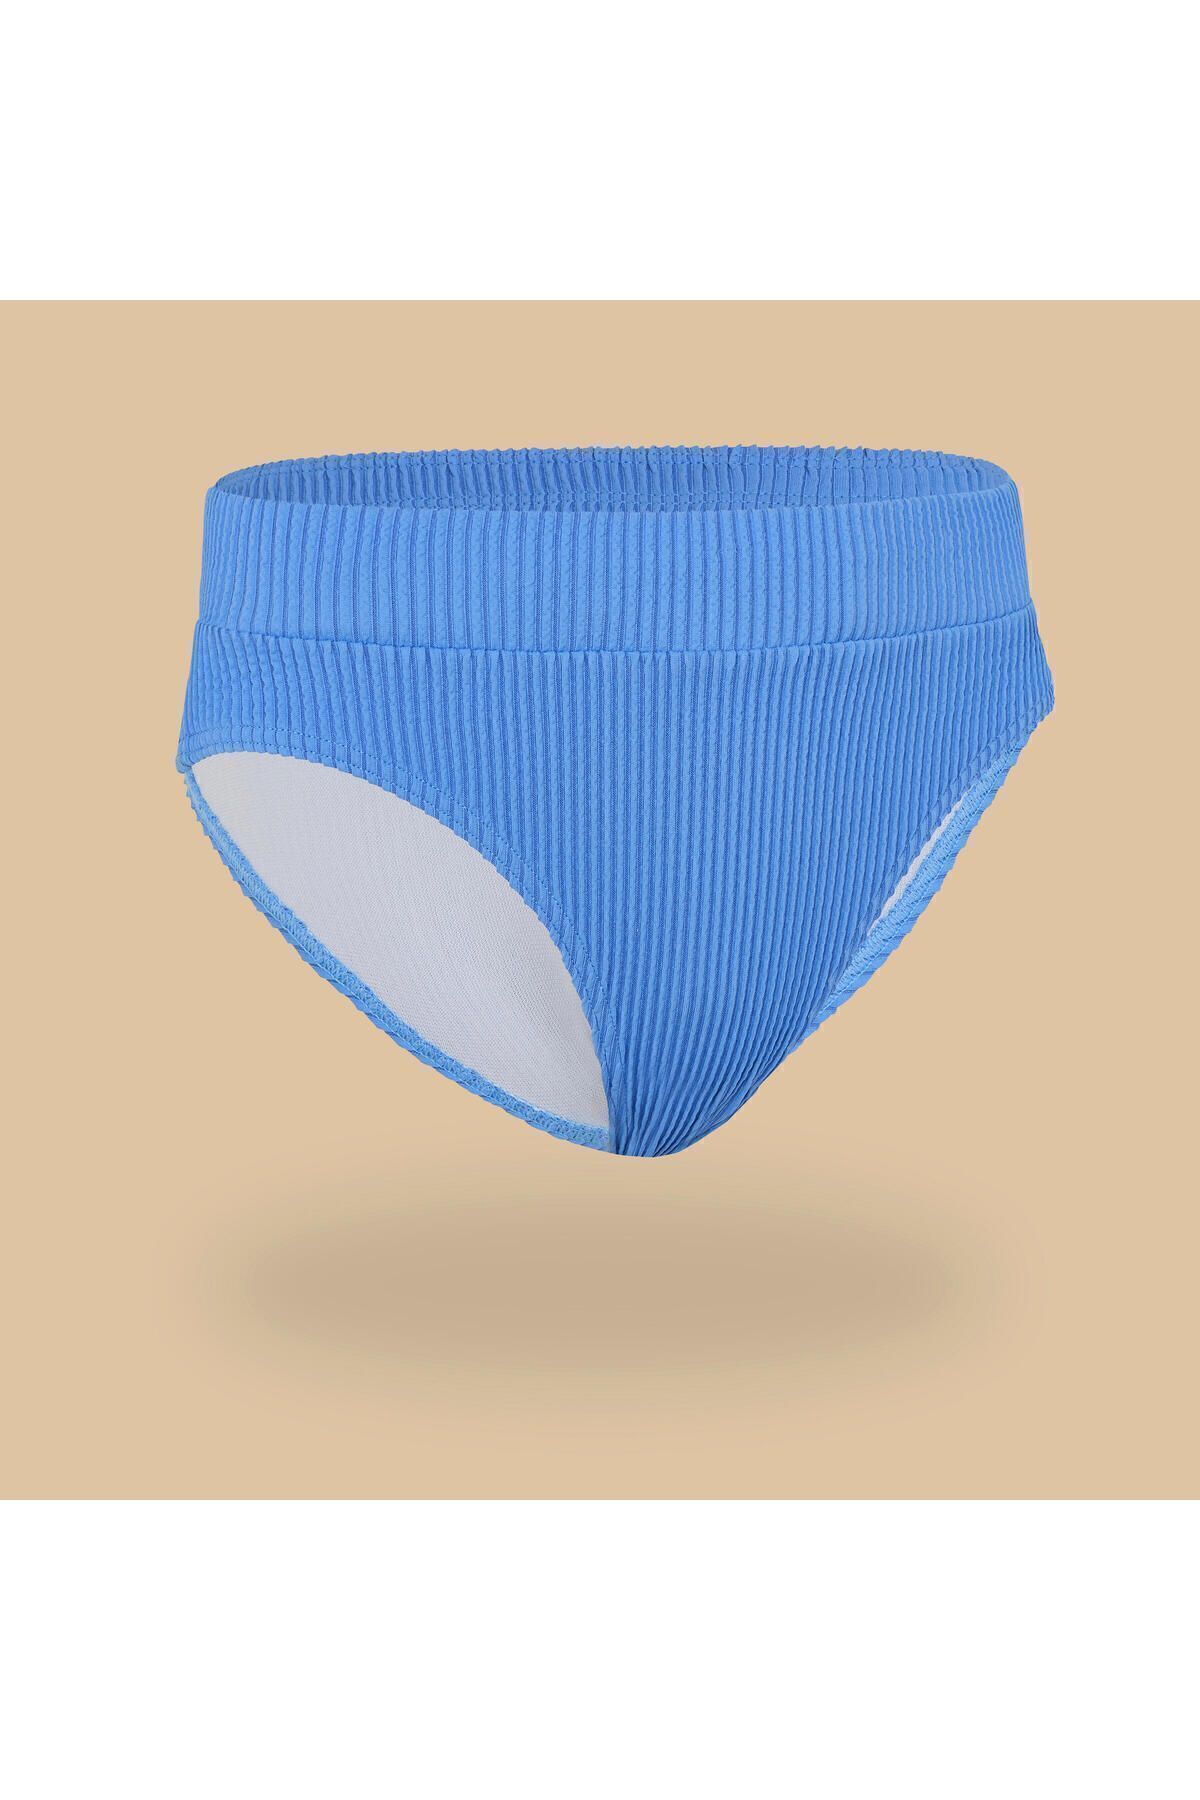 Decathlon Çocuk Bikini Altı - Lavanta Rengi - Bao 500 342294